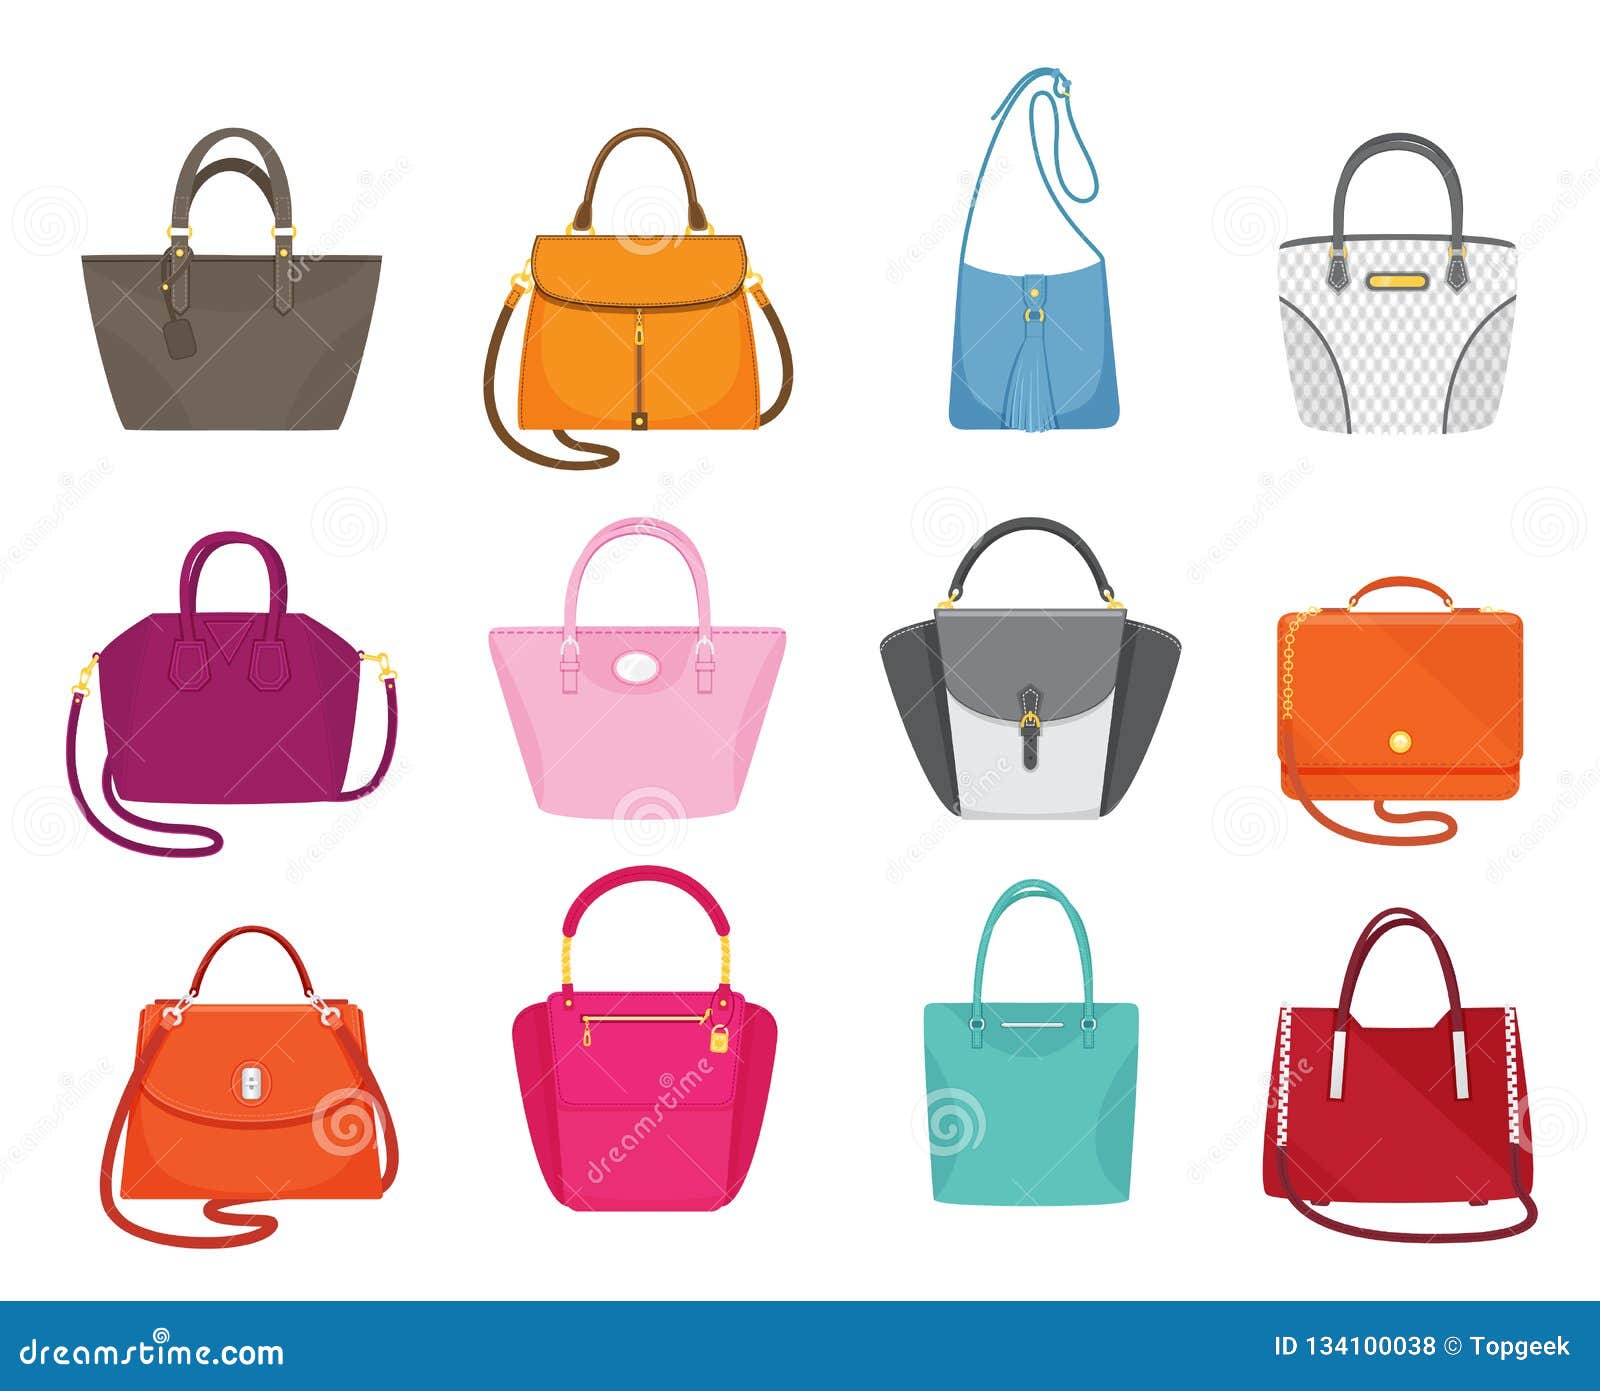 Women Handbags Collection Fashionable Set Vector Stock Vector ...